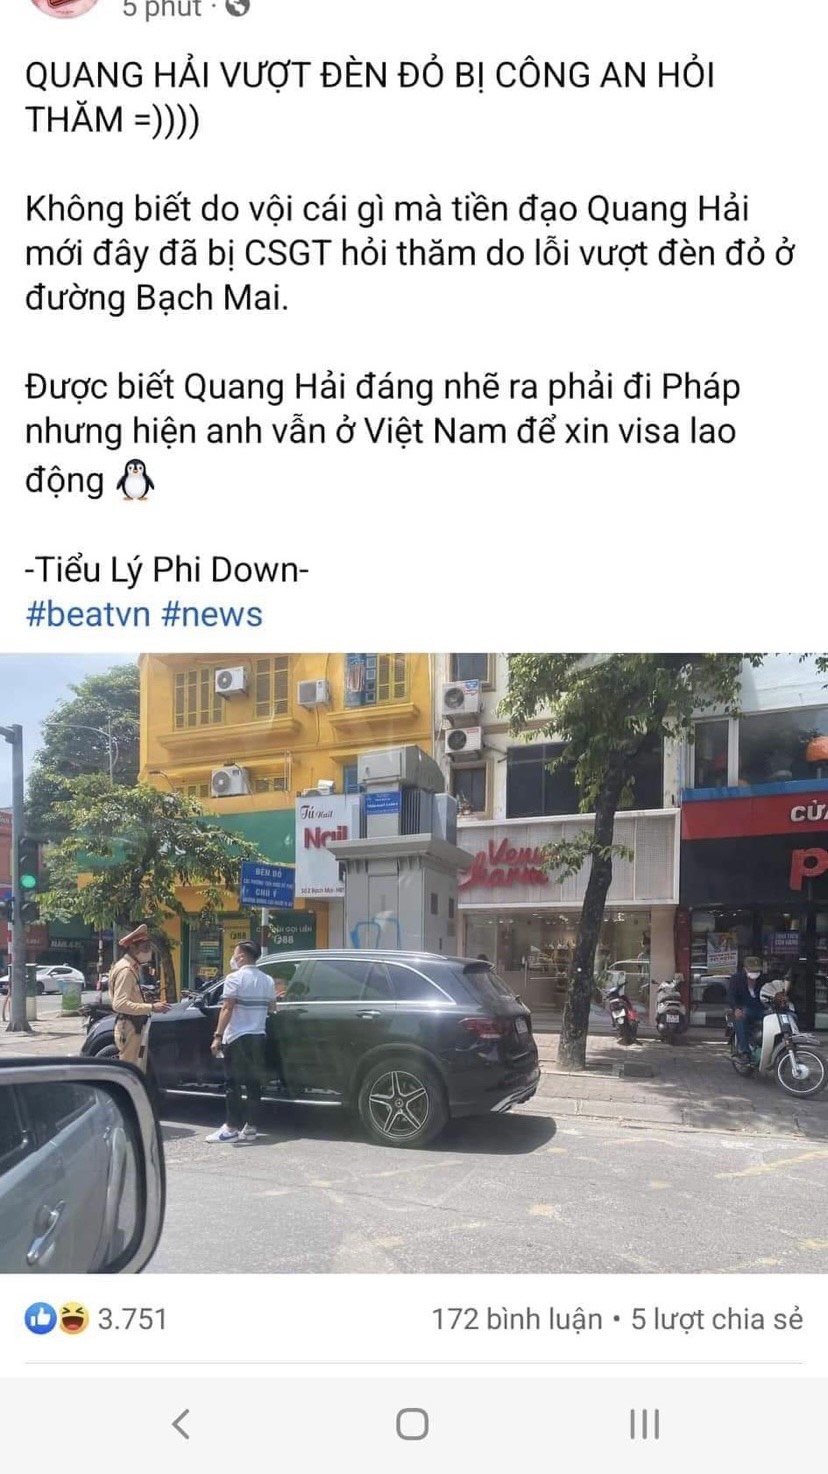 Sự thật thông tin cầu thủ Quang Hải bị CSGT dừng xe vì vượt đèn đỏ - 1